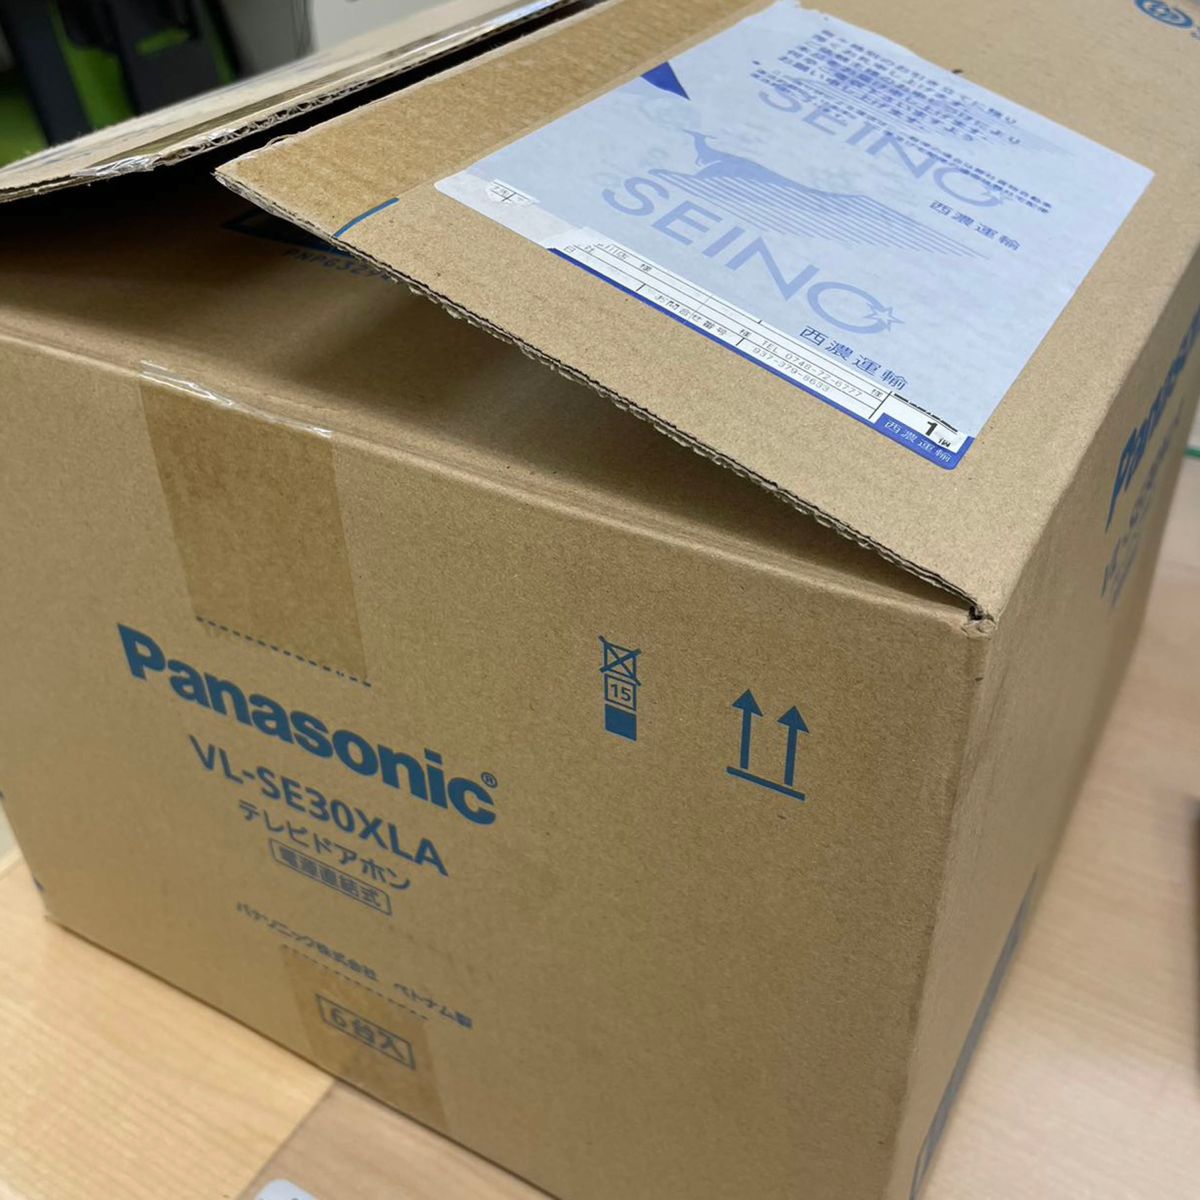 Panasonic テレビドアホン VL-SE30XLA 6台セット｜Yahoo!フリマ（旧